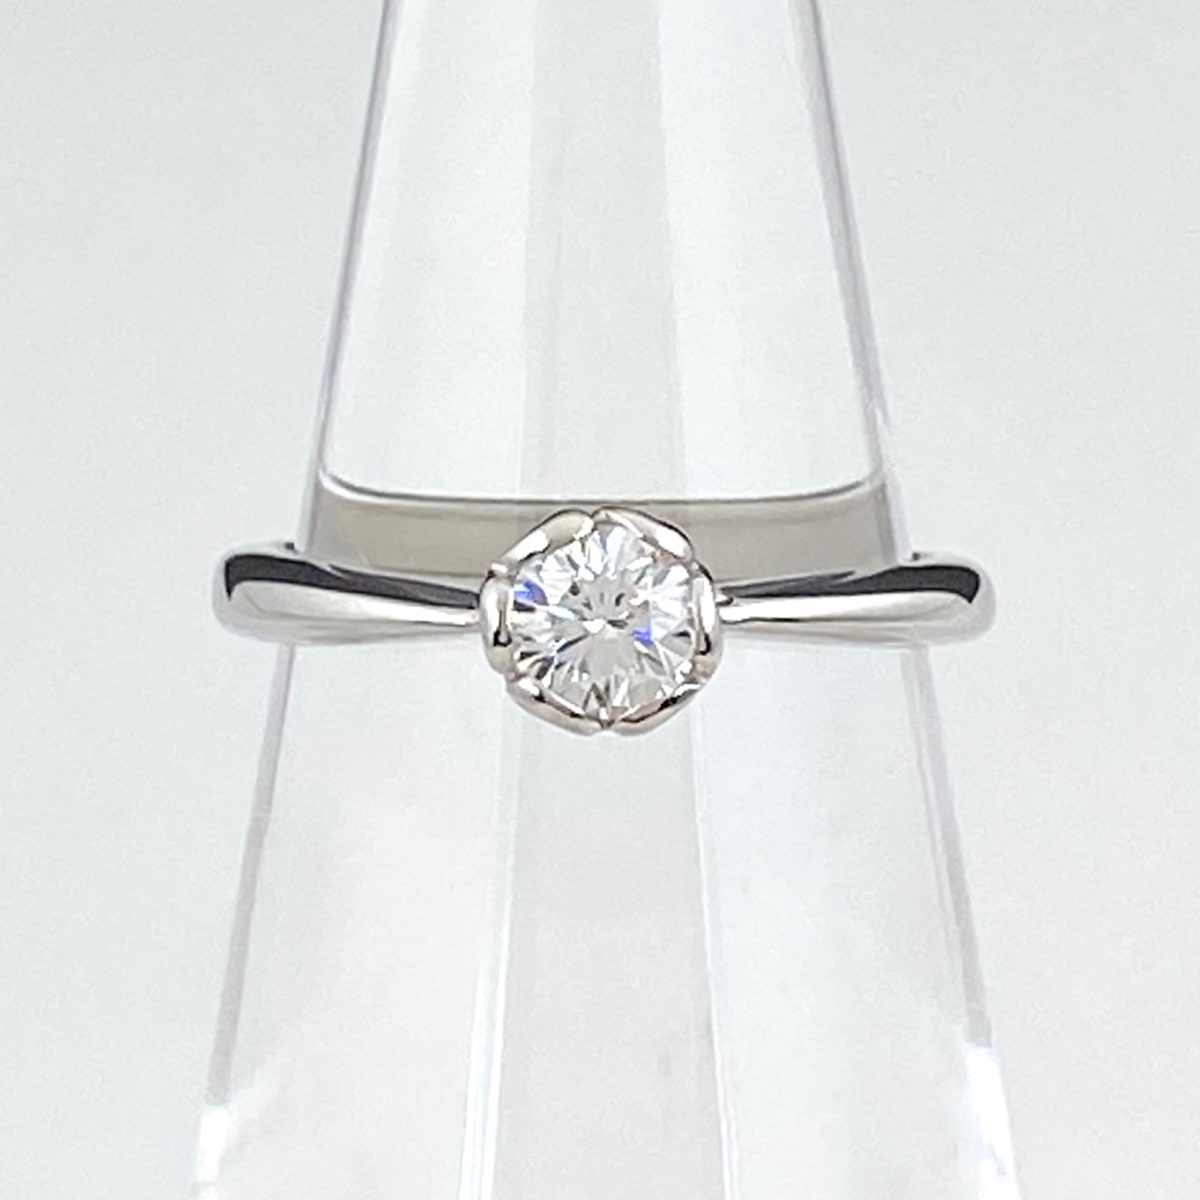  ダイヤモンド デザインリング プラチナ 指輪 リング 5.5号 Pt900 ダイヤモンド レディース 